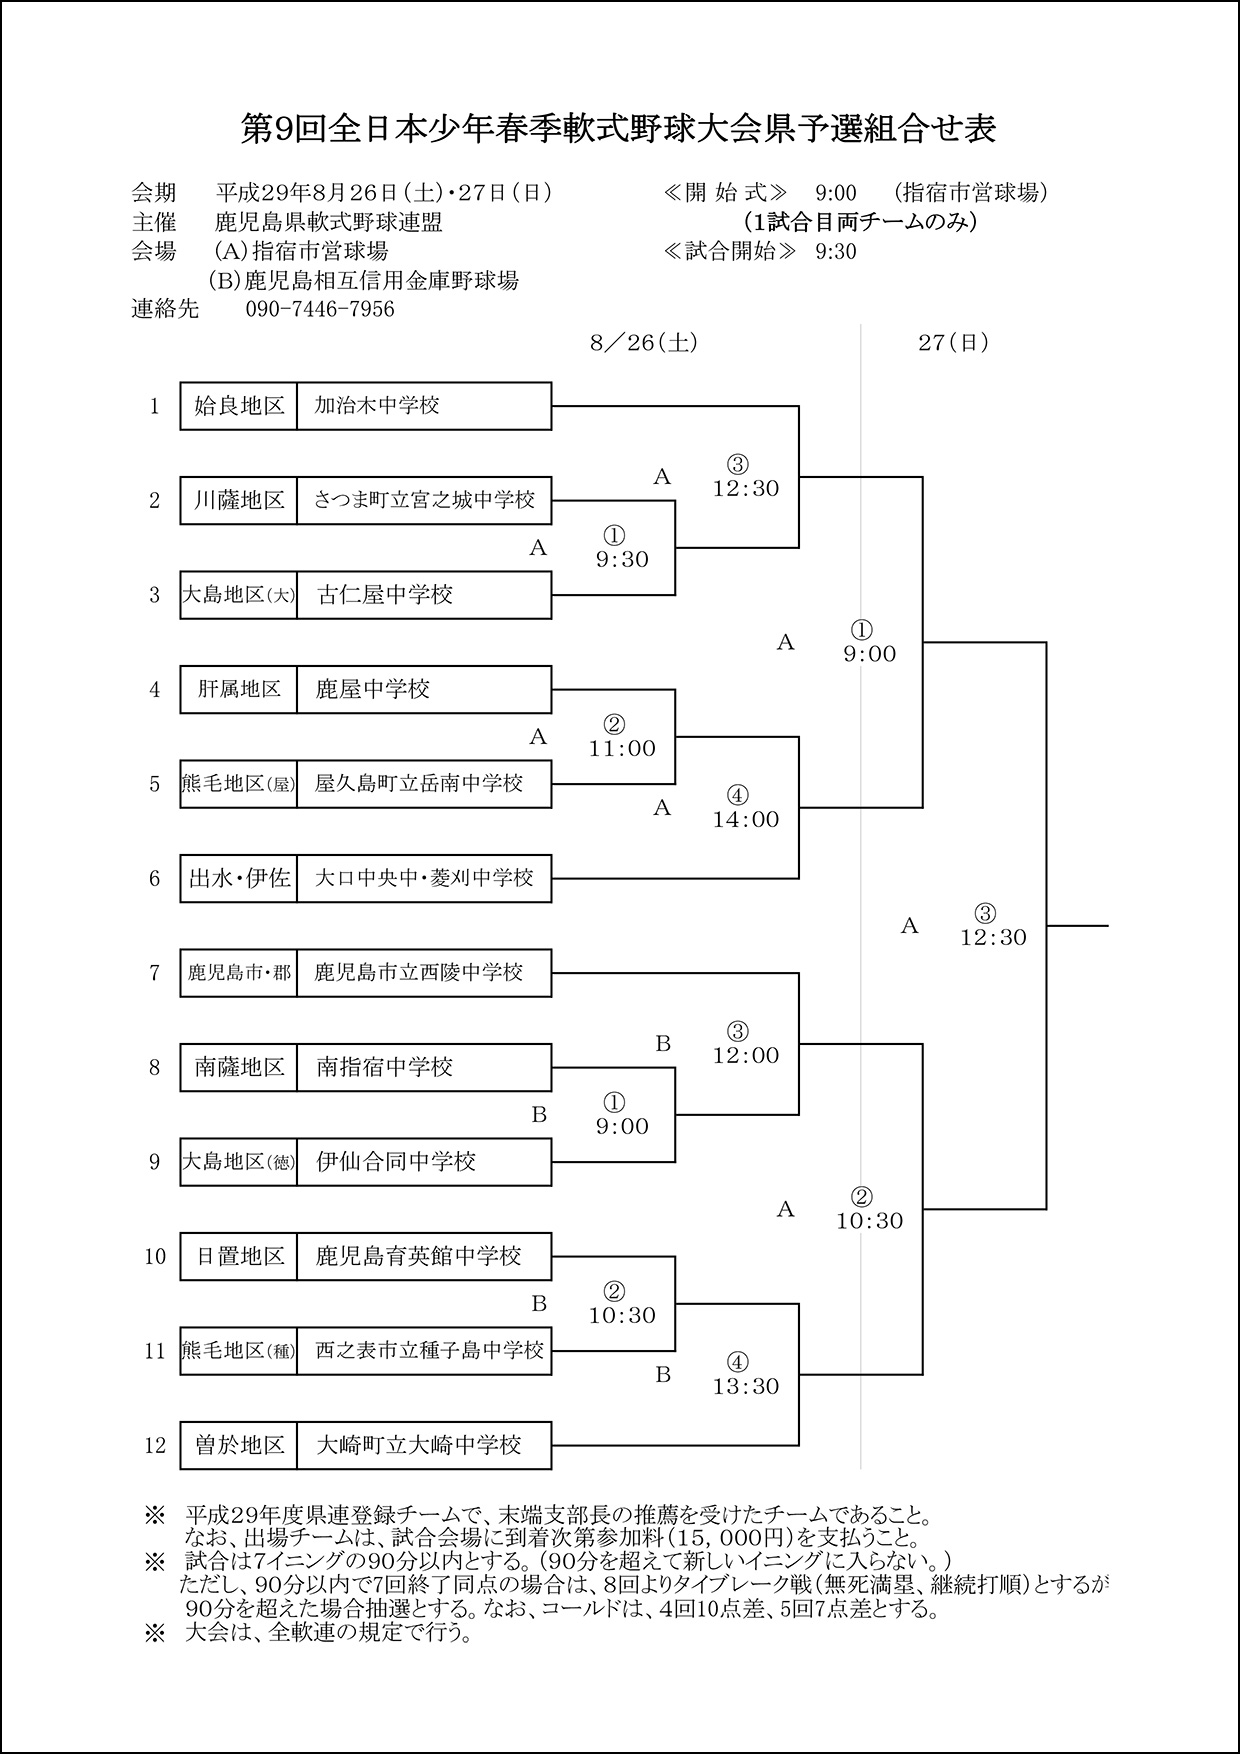 【組合せ】第９回全日本少年春季軟式野球大会県予選組合せ表